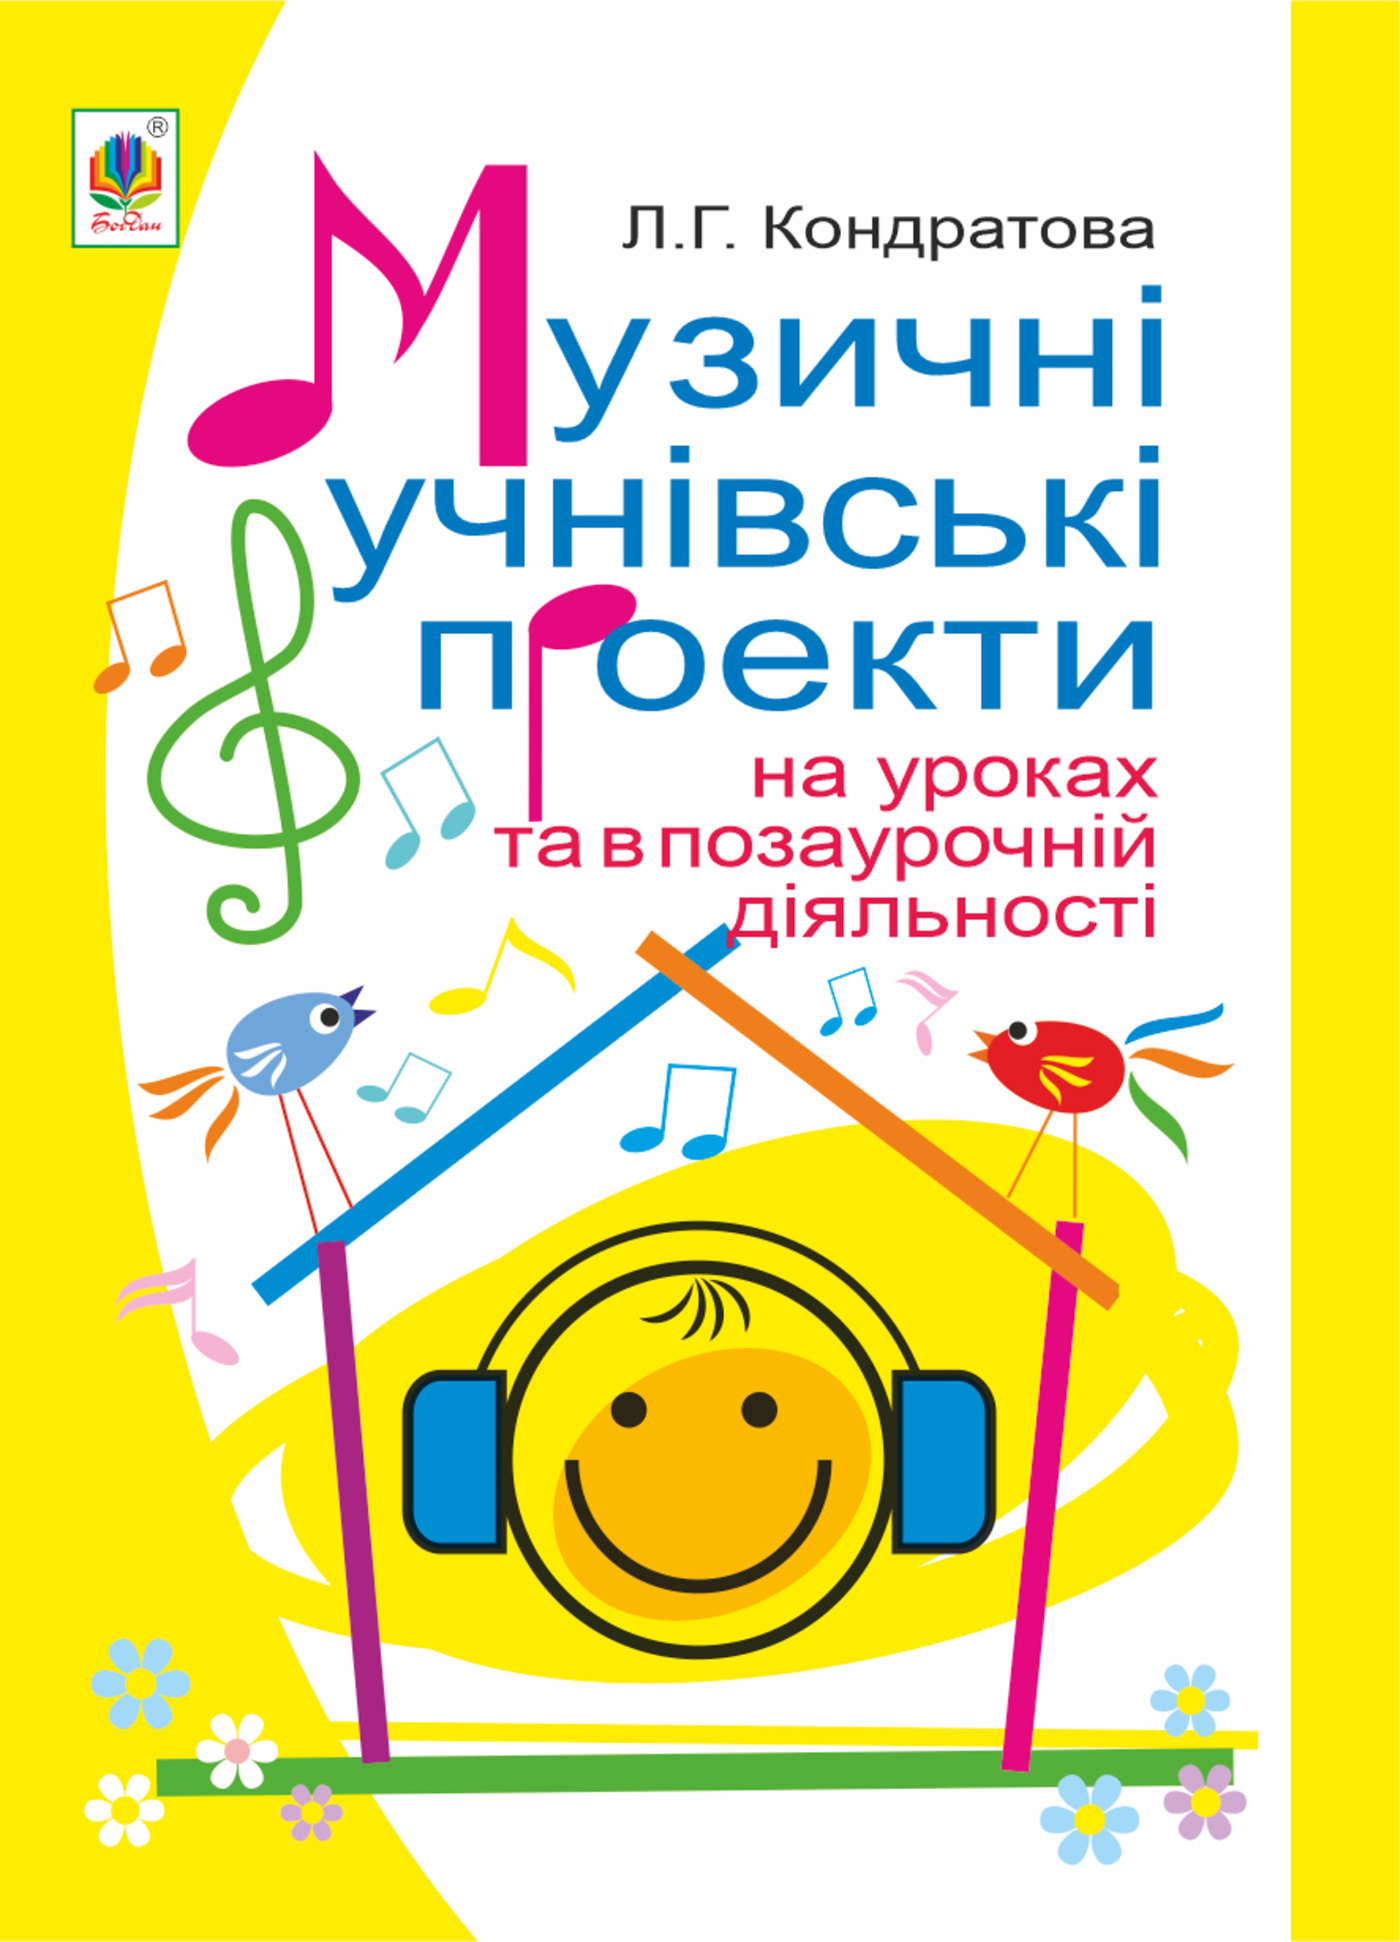 Музичні учнівські проекти на уроках та в позаурочній діяльності: Методичний посібник для вчителя музичного мистецтва